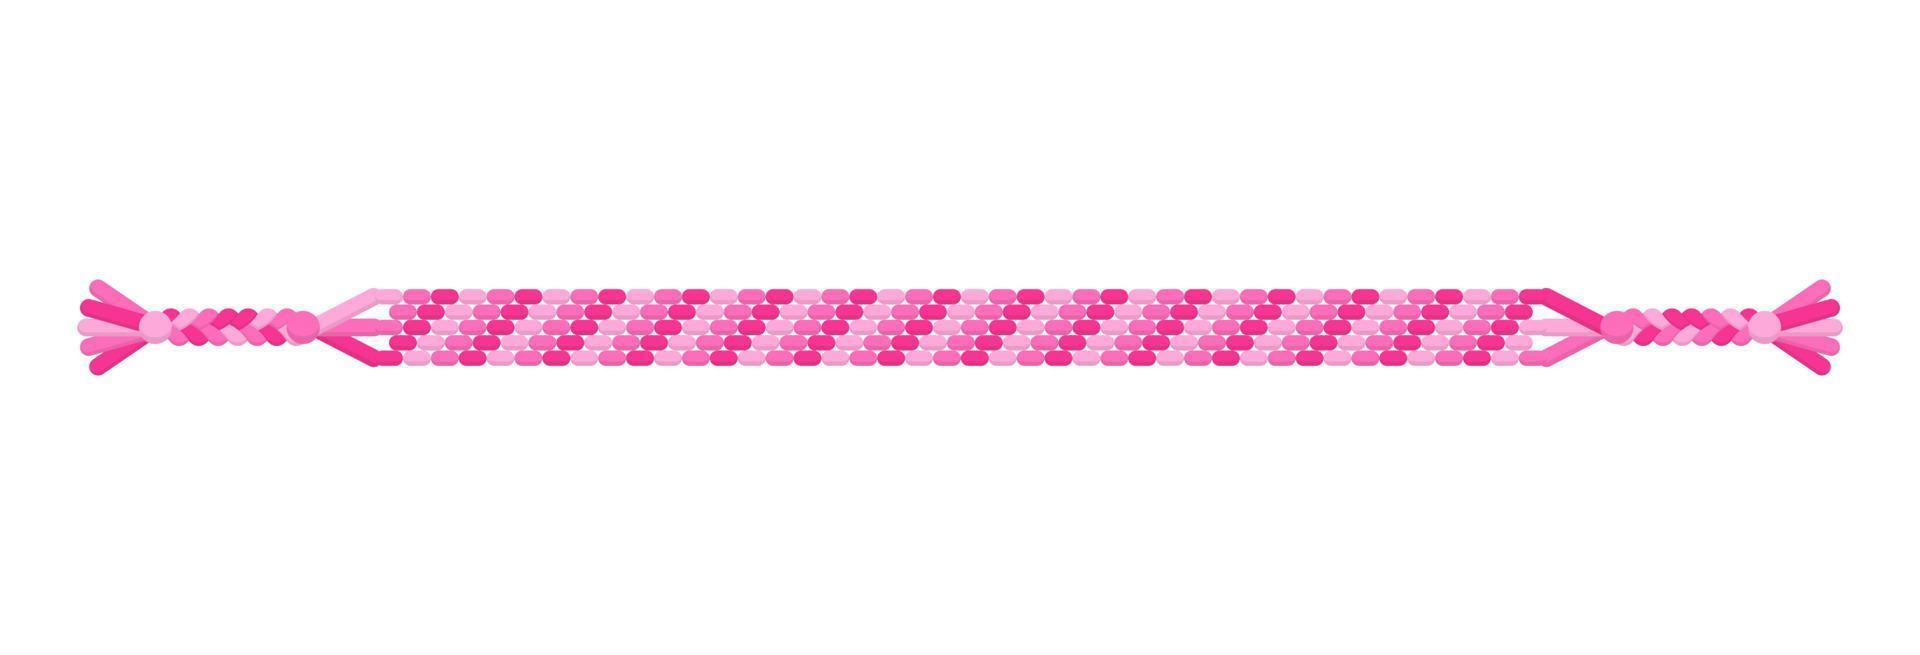 vector gekleurde handgemaakte hippie vriendschap armband van roze draden.